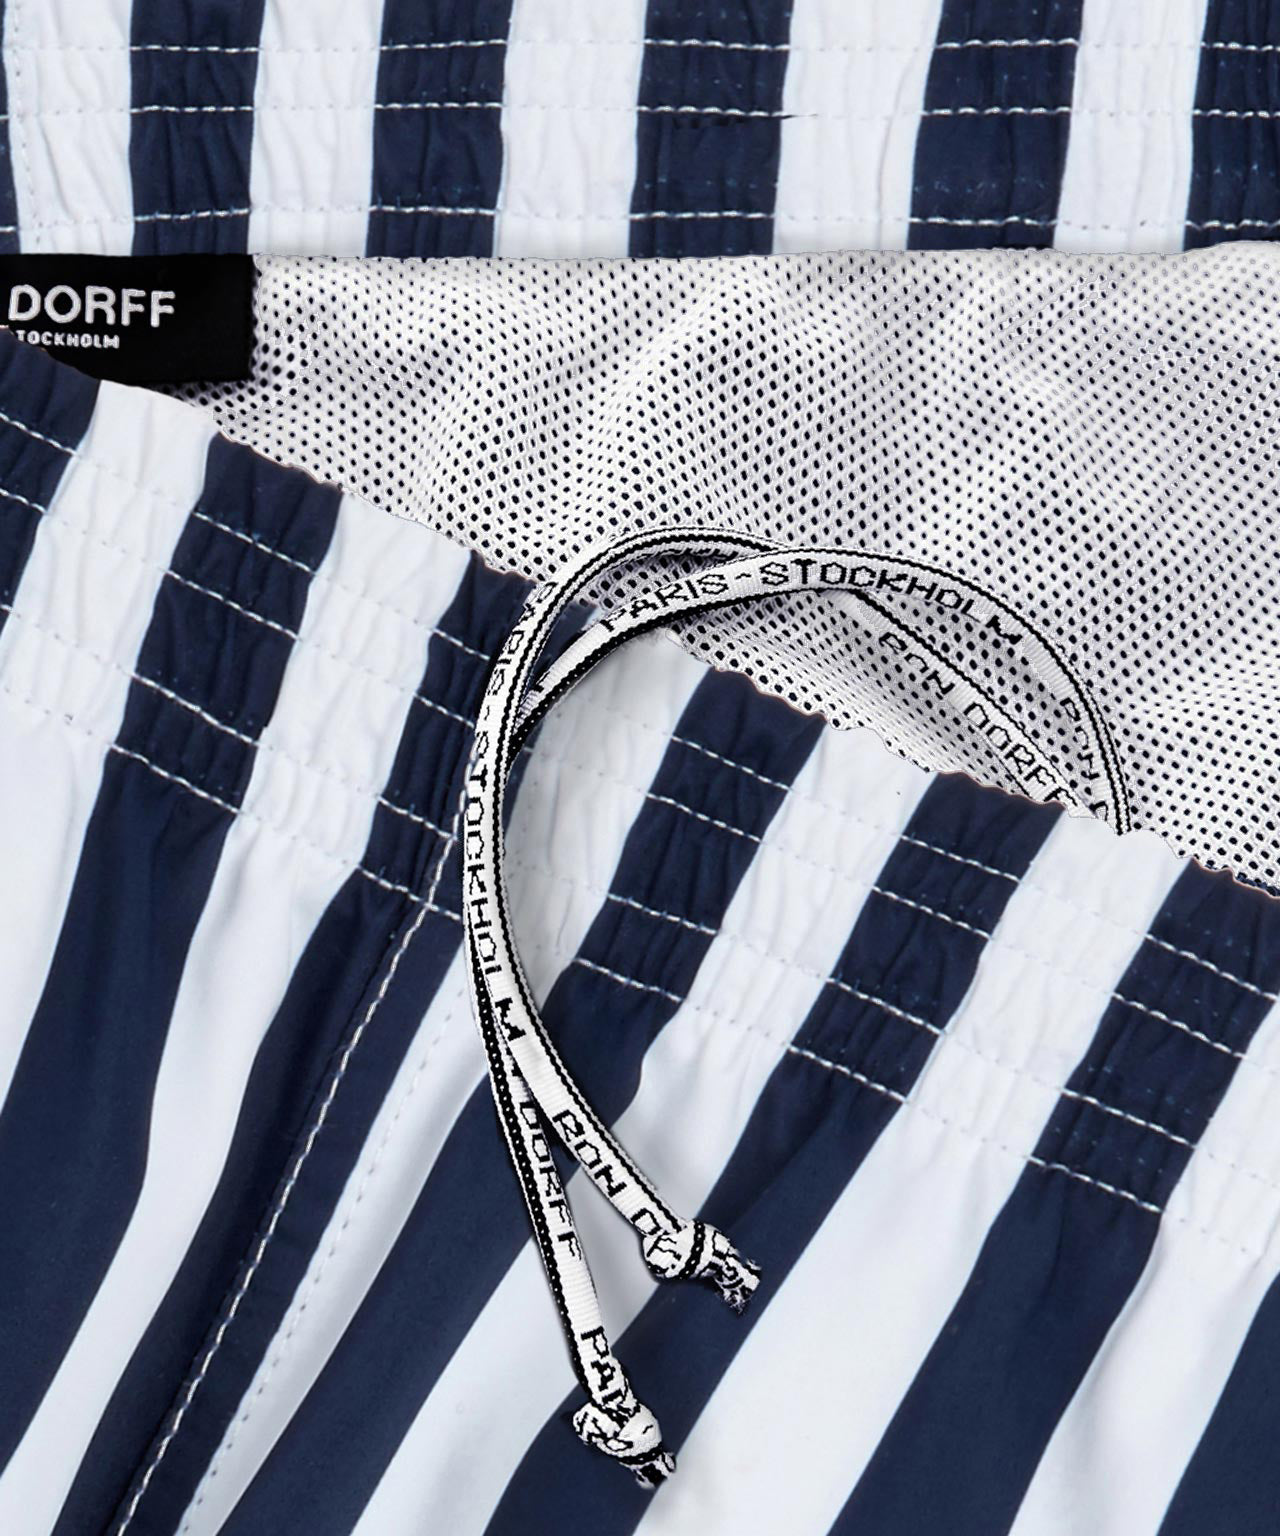 Recycled Polyester Swim Shorts: Navy/White